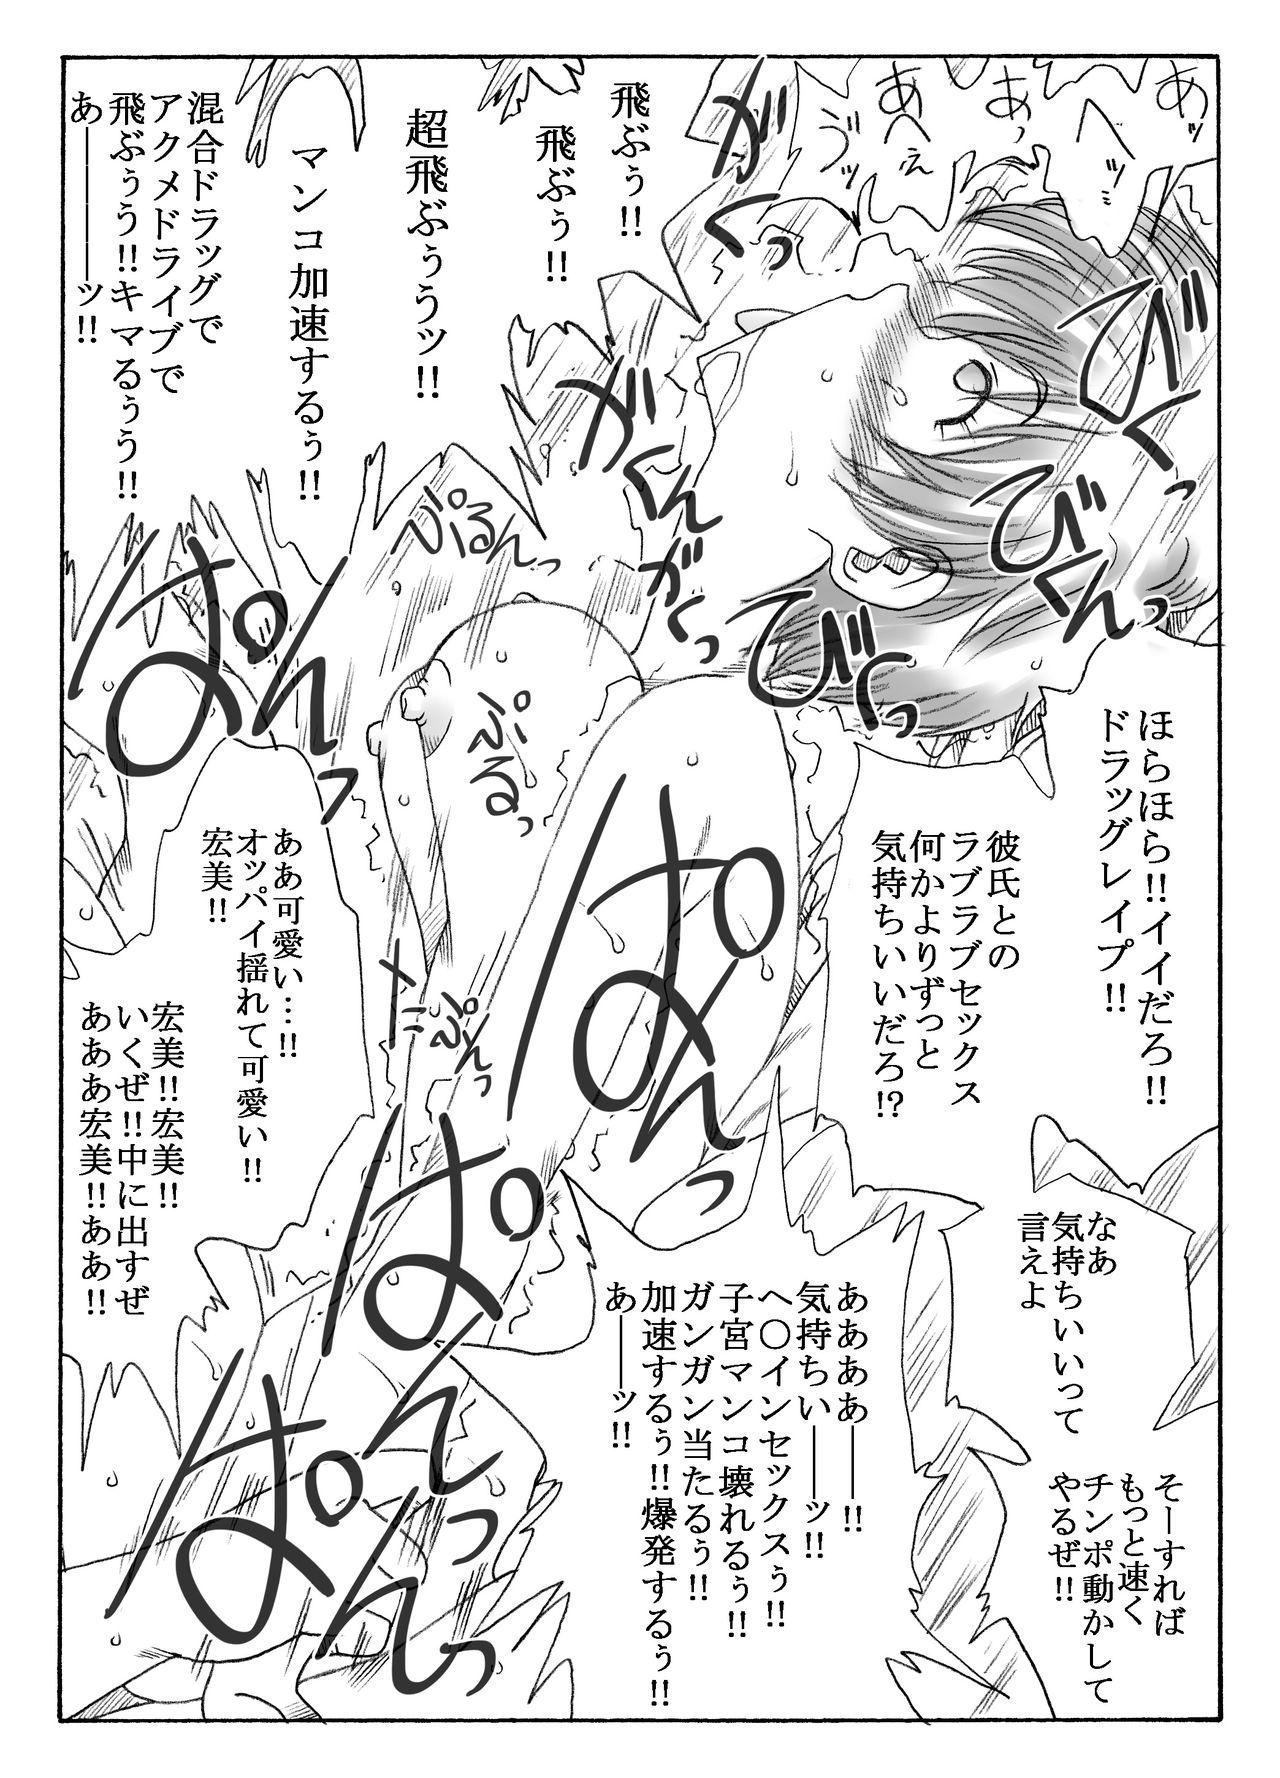 Pegging kusuridukinisare ryoujyokusareru senseito seitotachi - Original Family Roleplay - Page 5